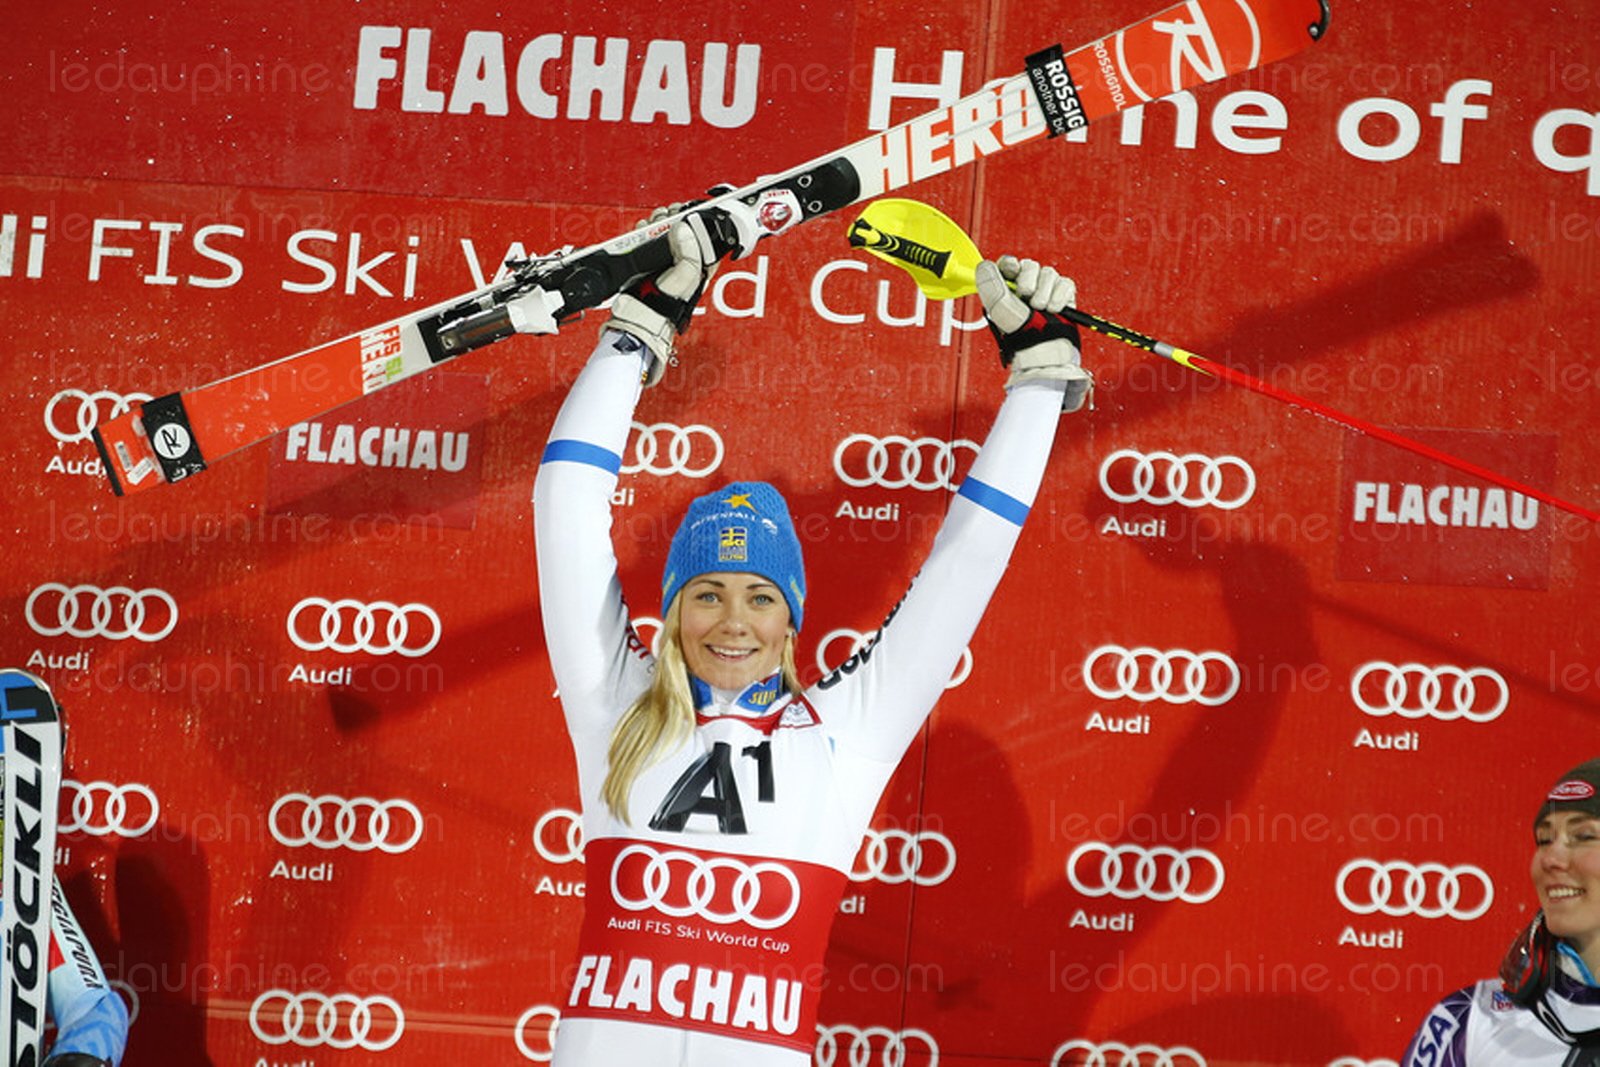 Frida Hansdotter gana su primera carrera del año en el slalom nocturno de Flachau